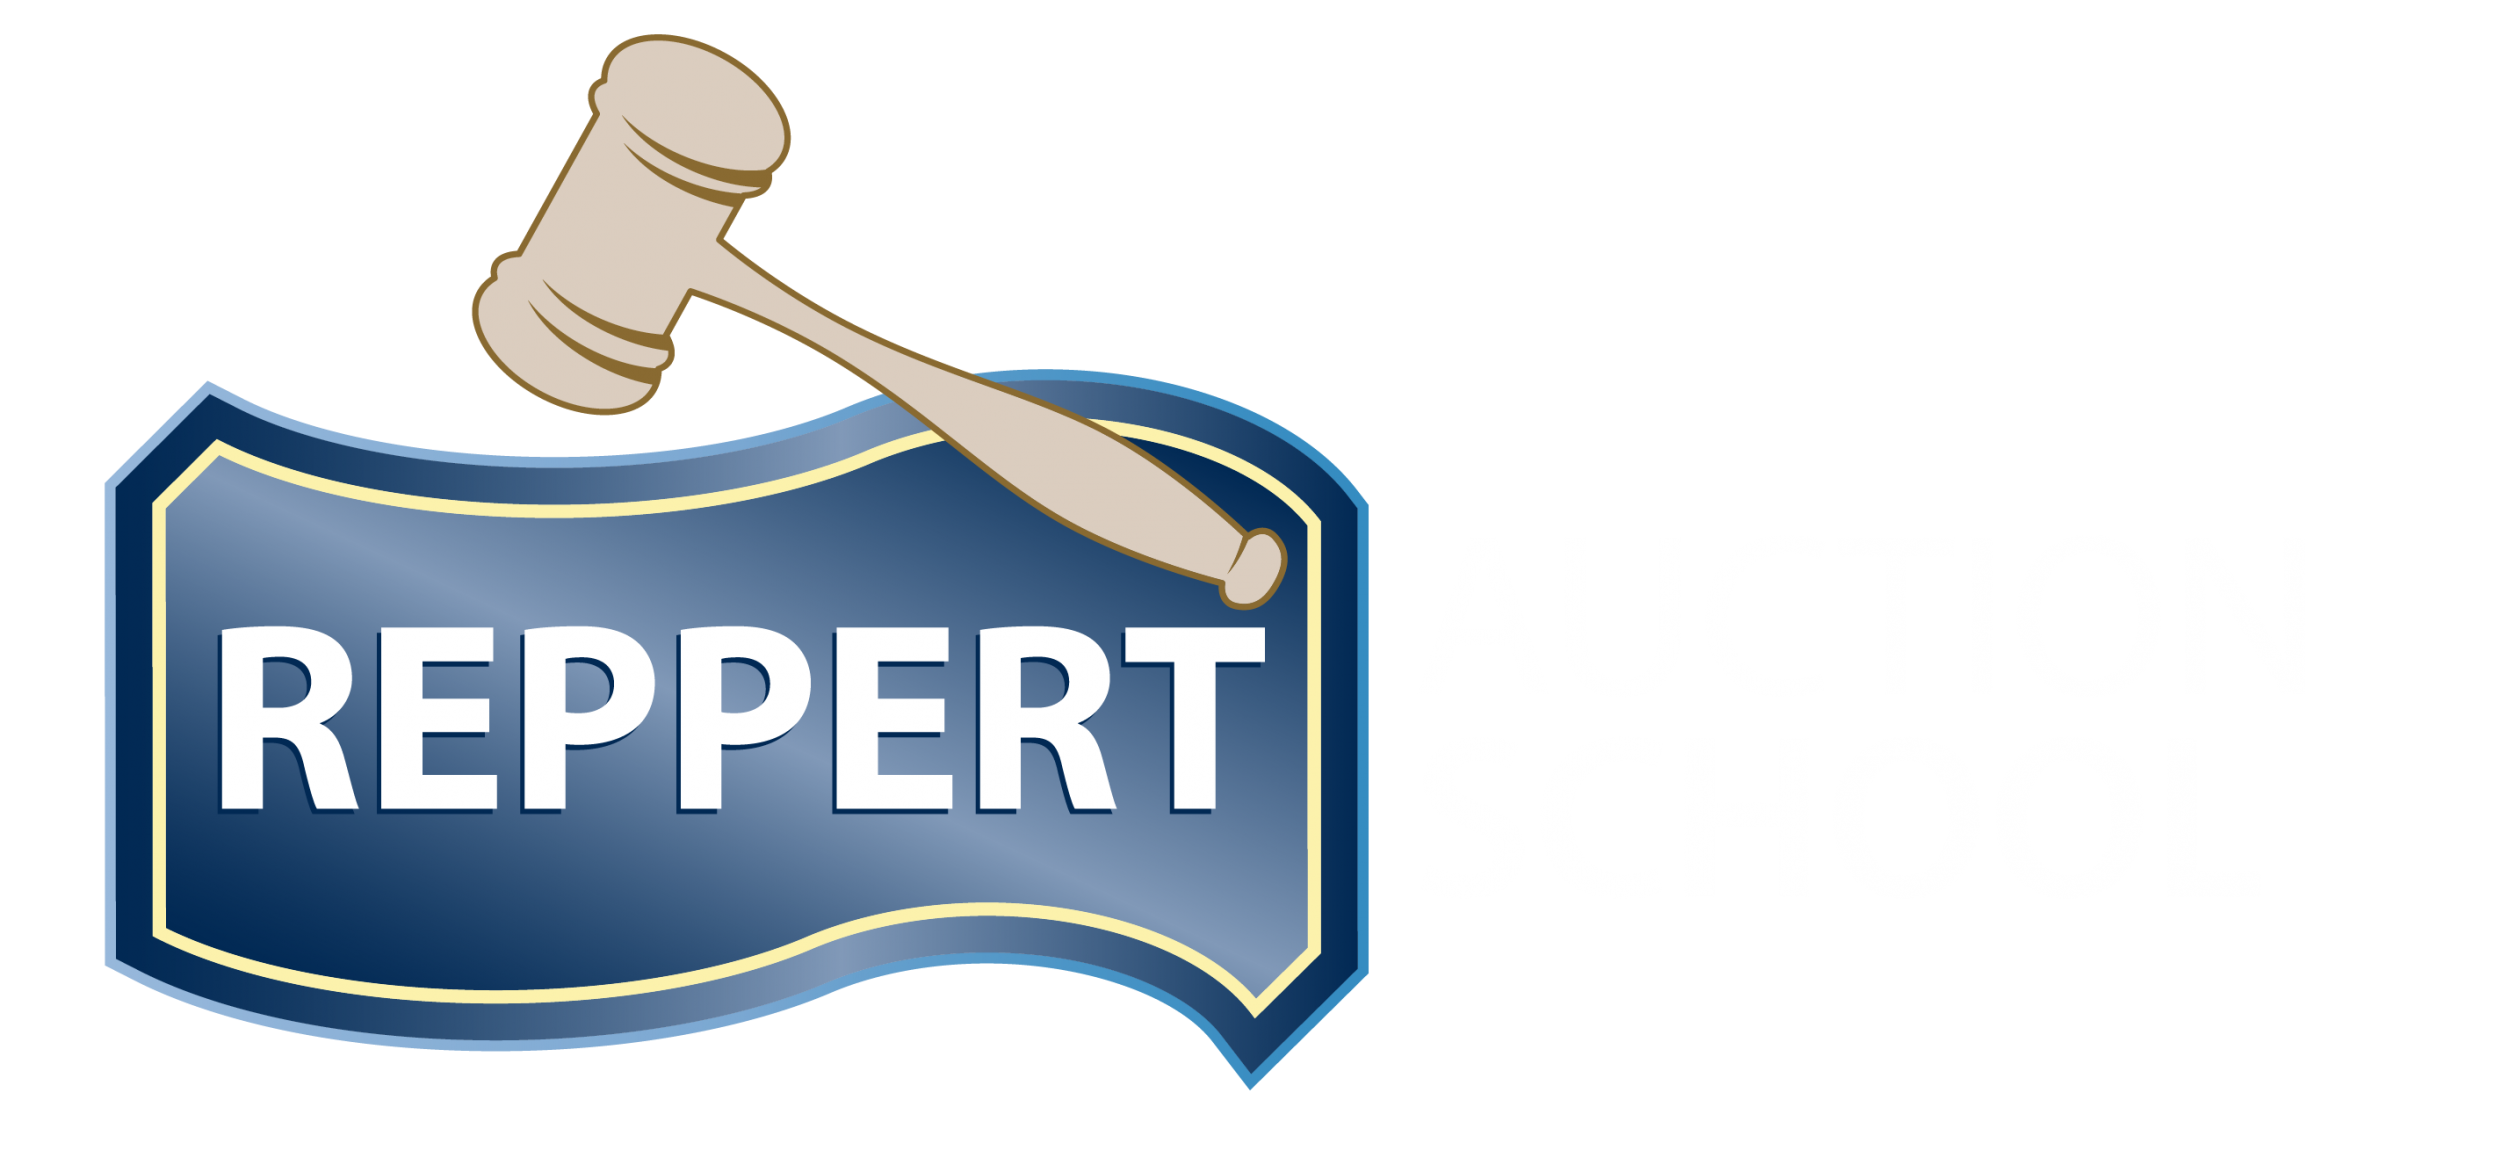 Reppert Auction School